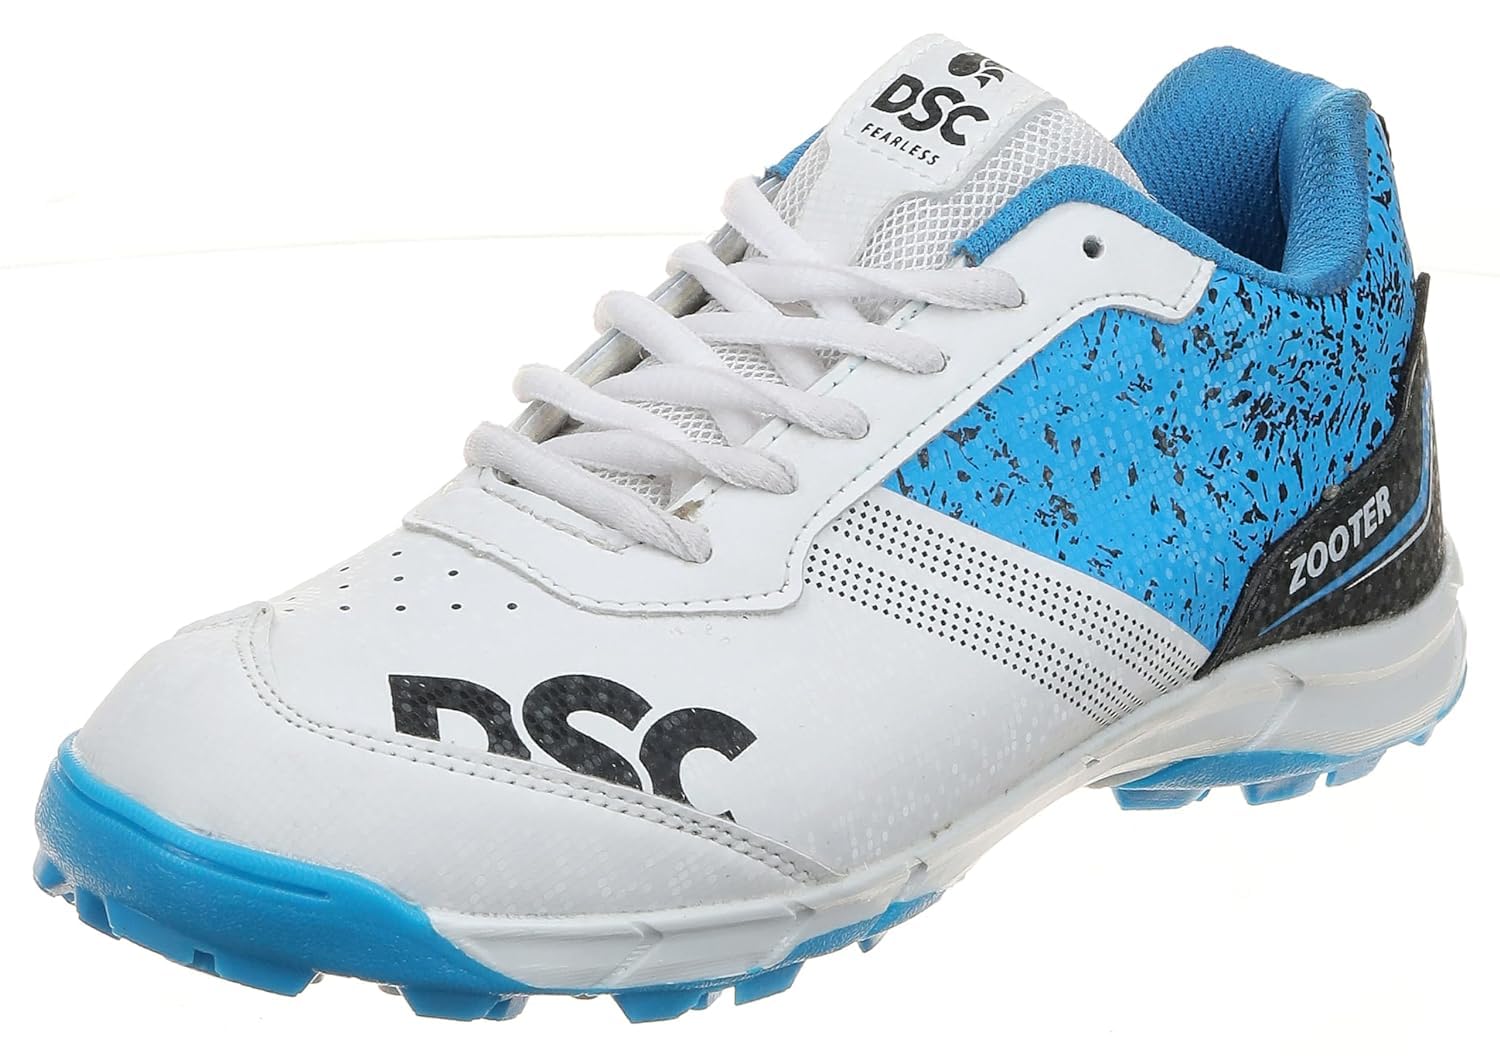 DSC 1503576 Size 9US WHITE BLUE ZOOTER PVC CRICKET SHOES